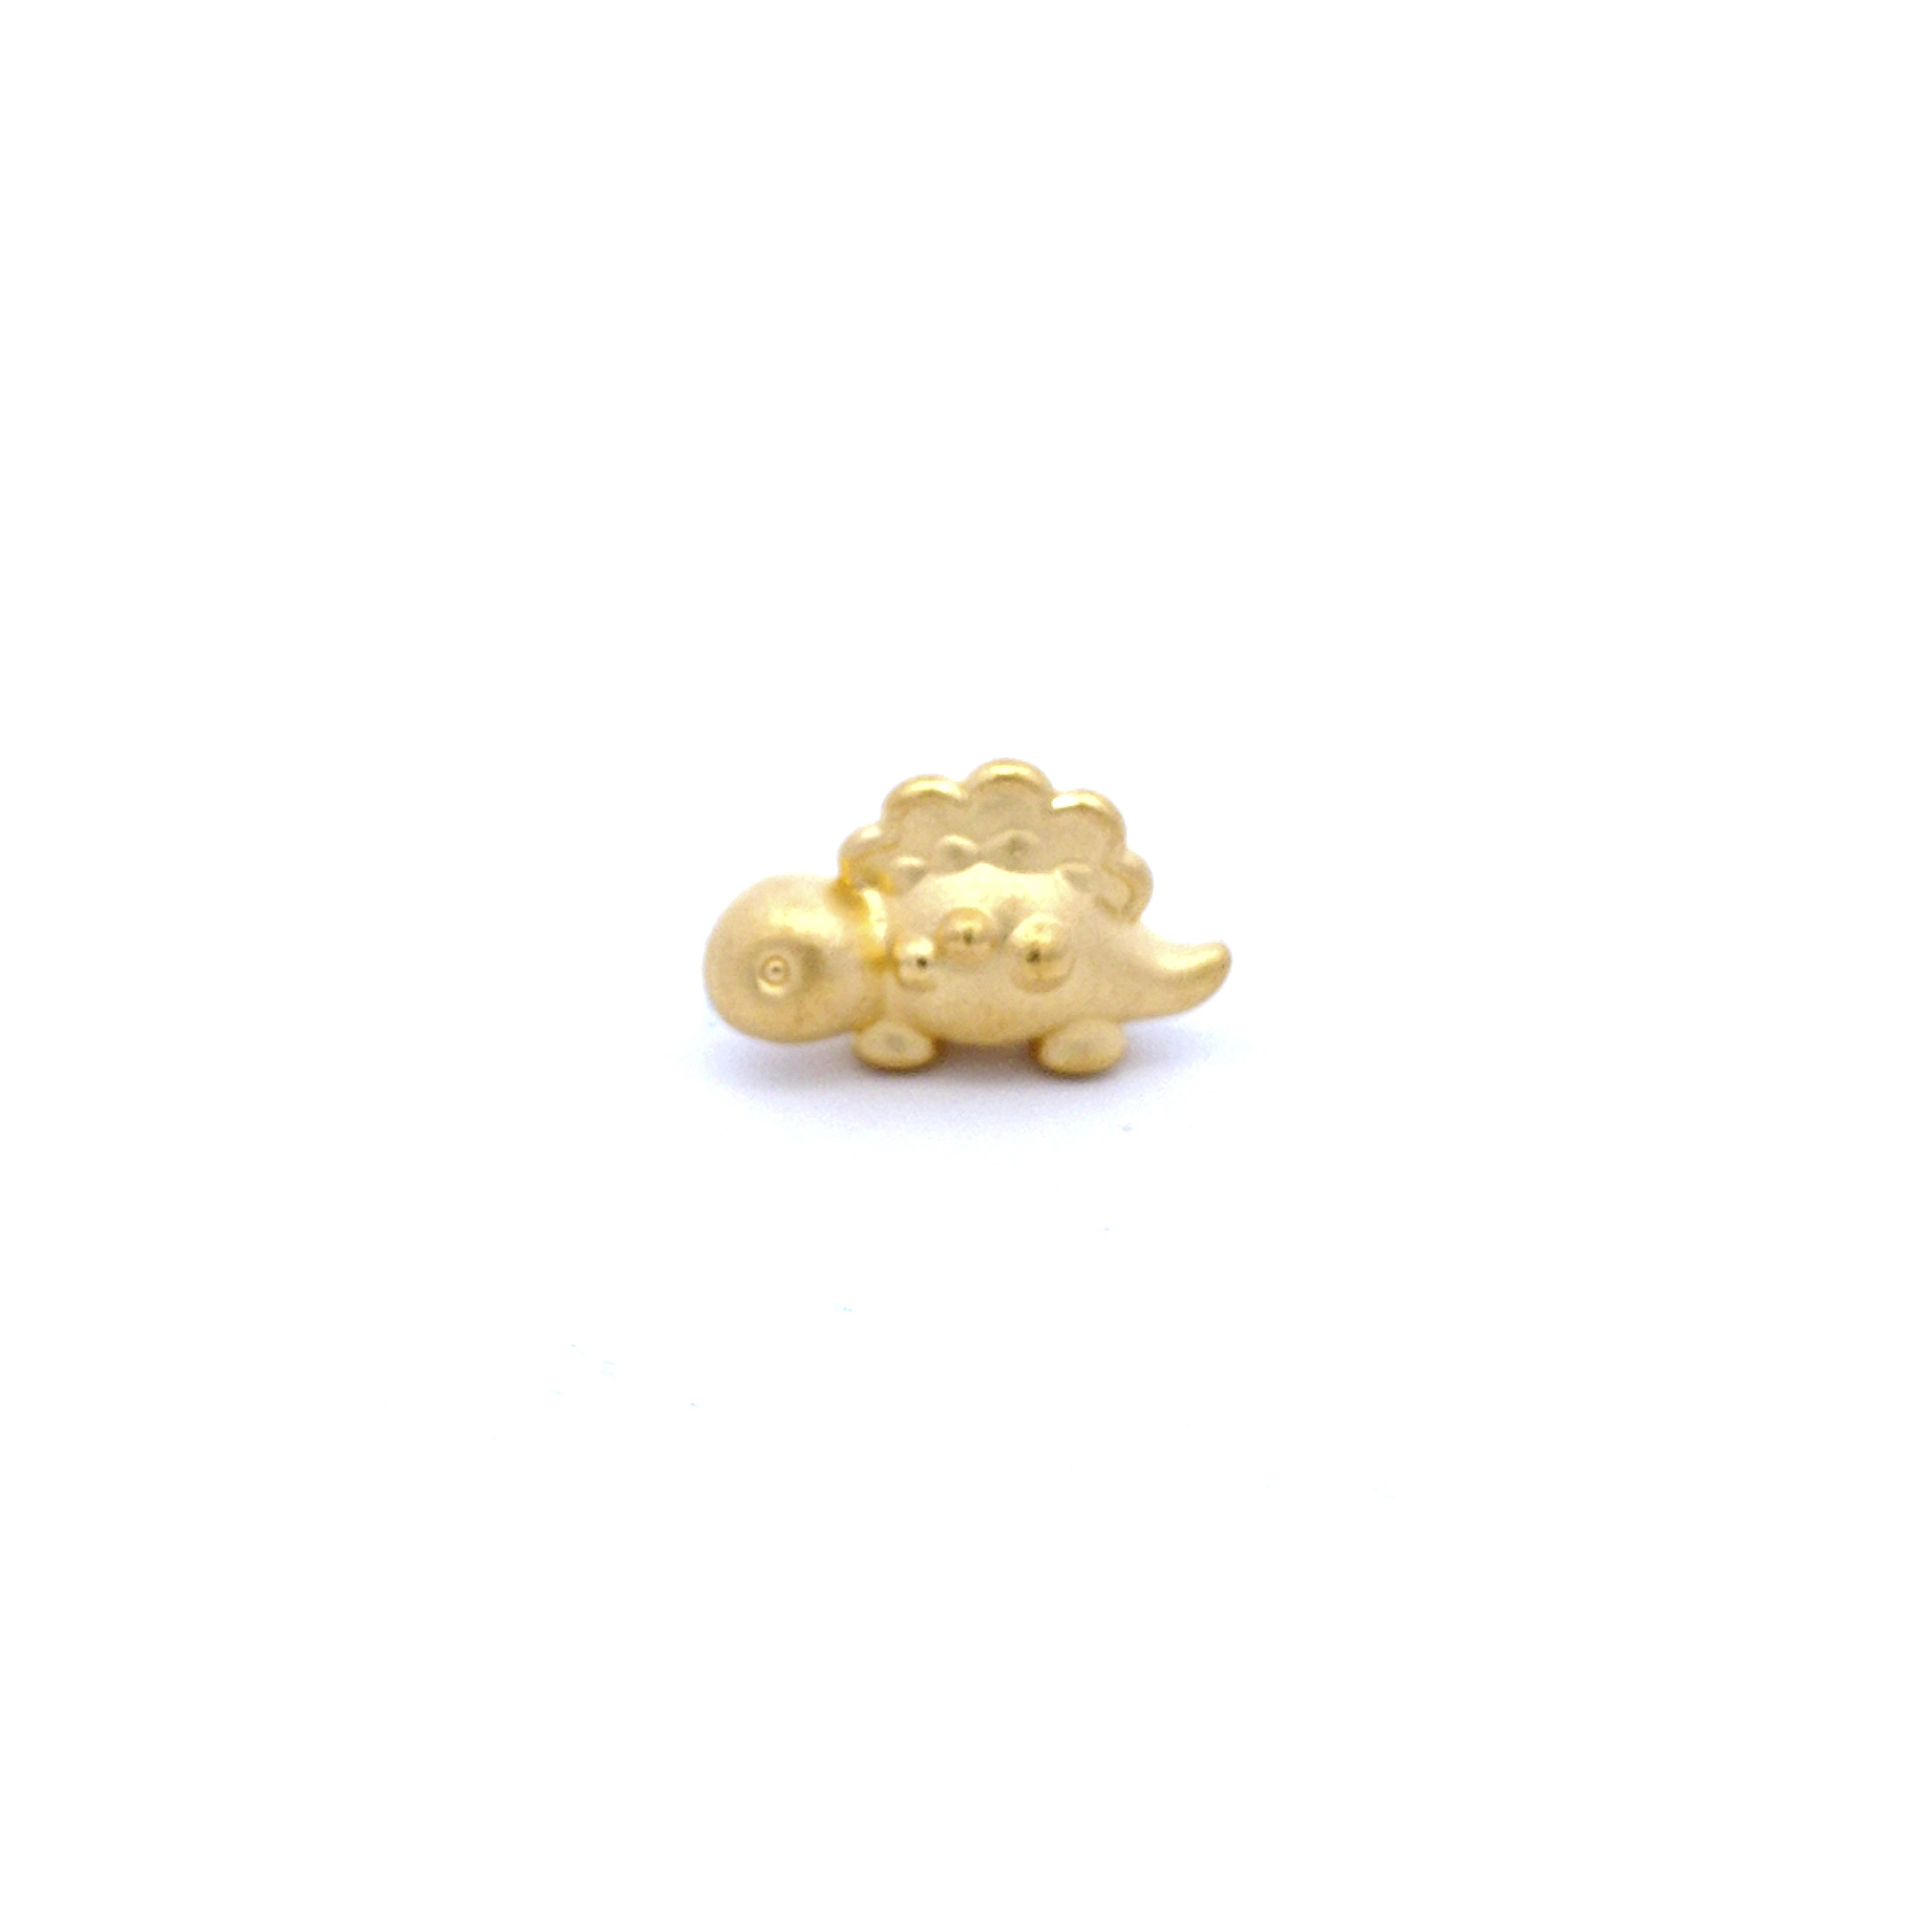 TIANSI 999(24K) Gold Cute Dinosaur Charm